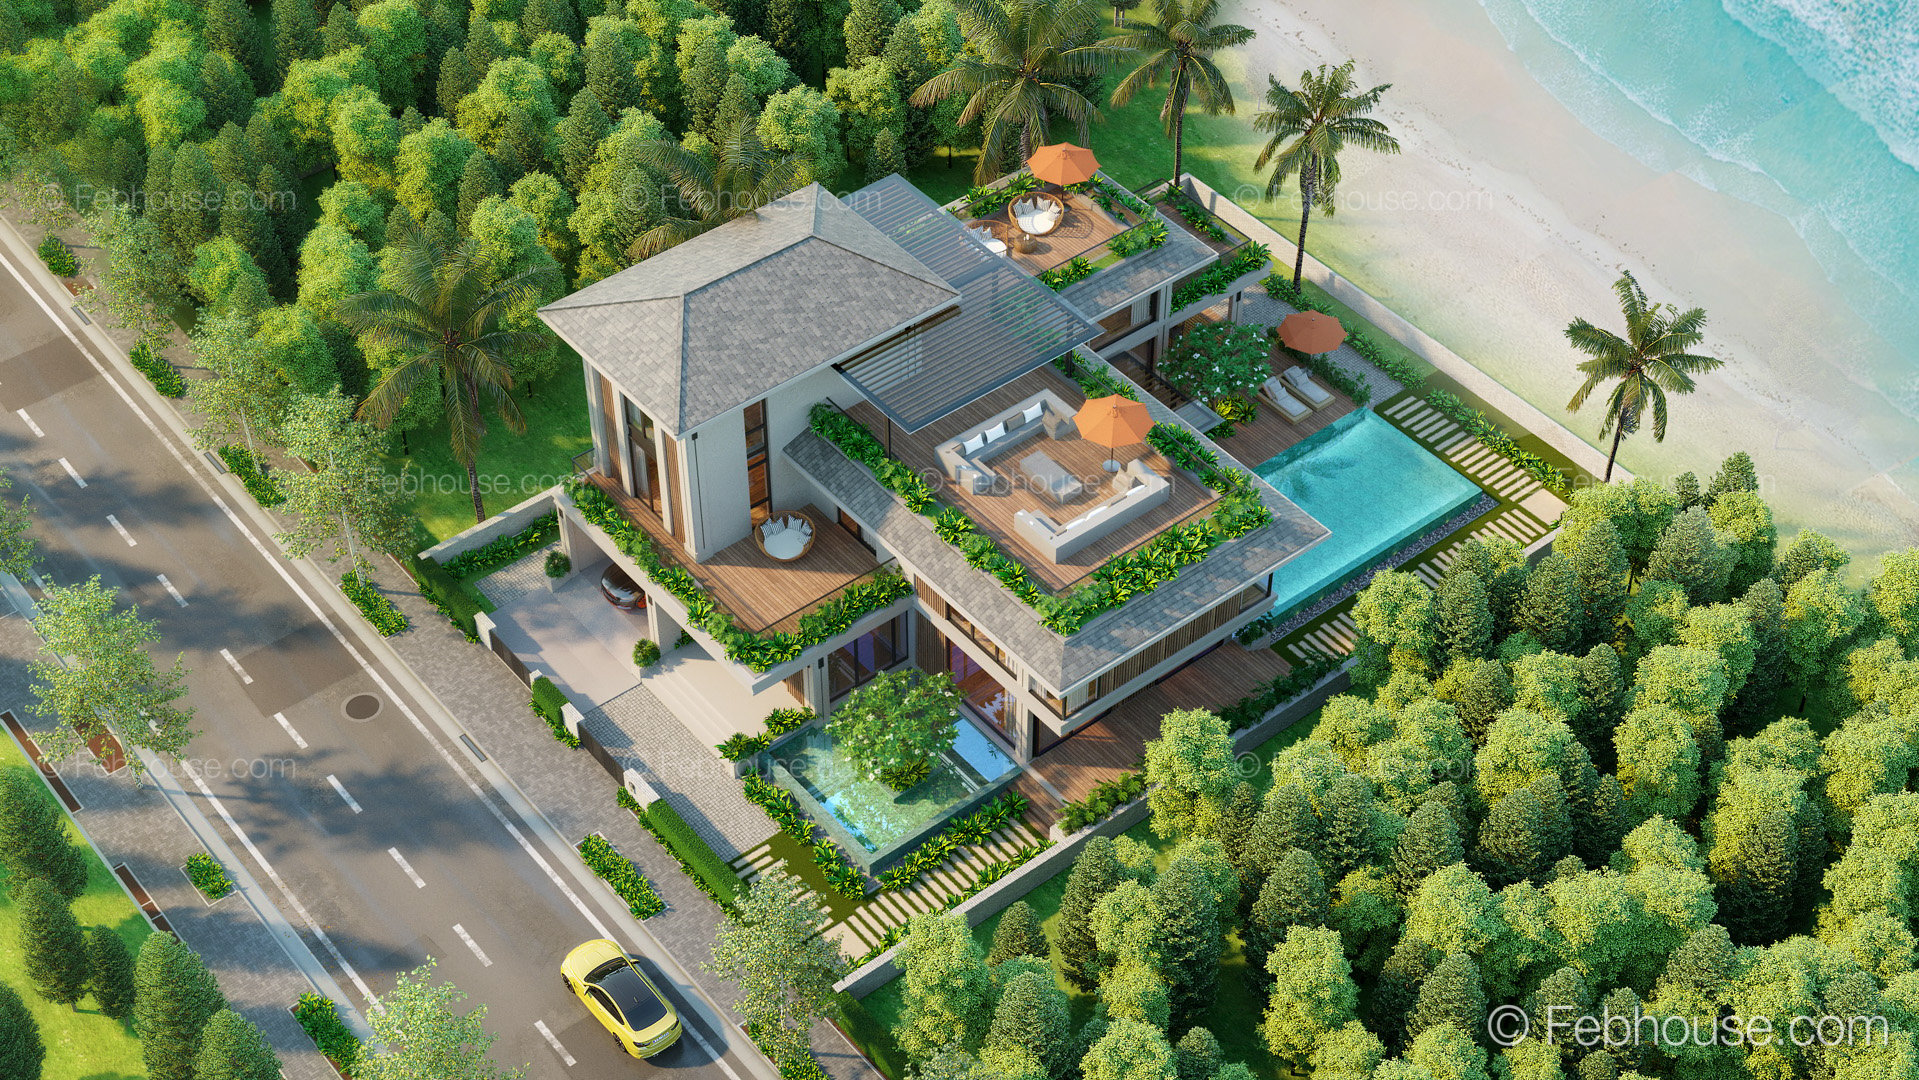 Thiết kế Biệt Thự tại Đà Nẵng SH-MAISON  nhà vườn ven biển phong cách đương đại 1660599475 0